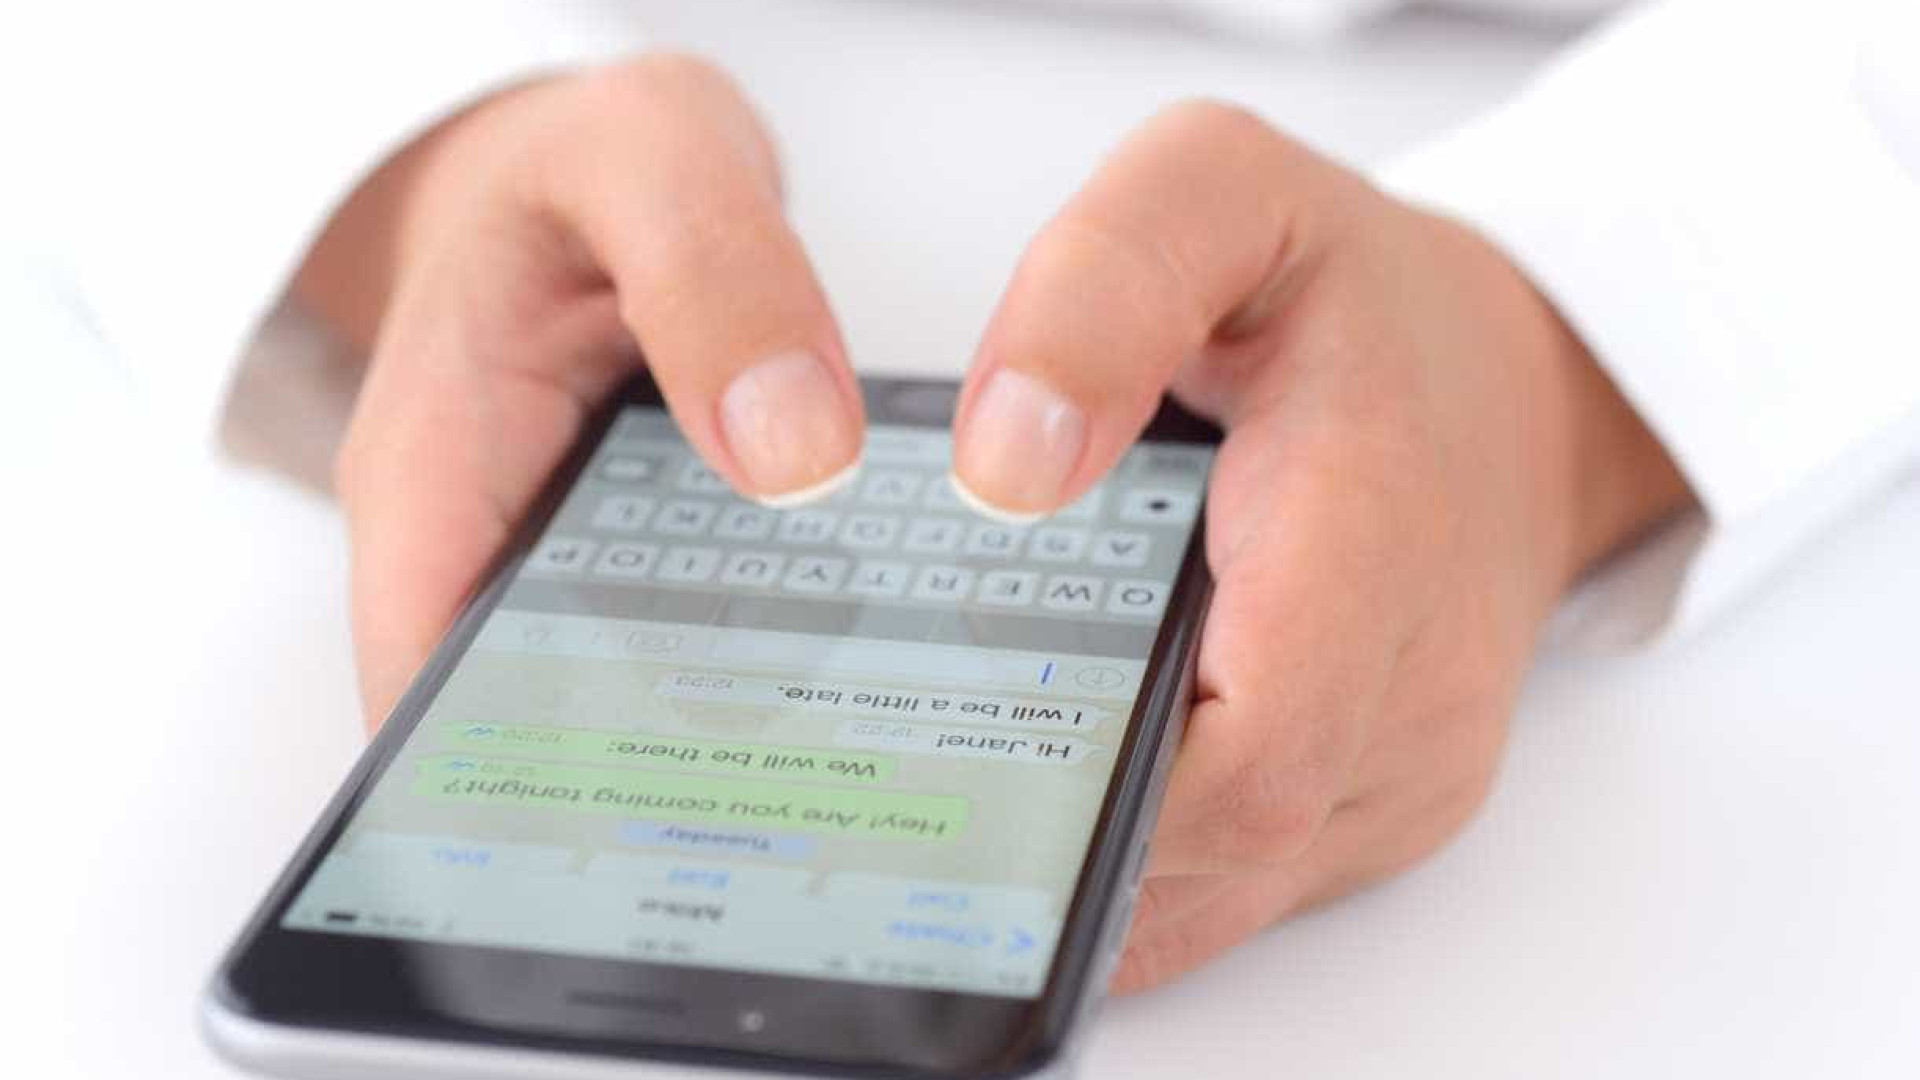 WhatsApp: mensagens enviadas por engano poderão ser apagadas